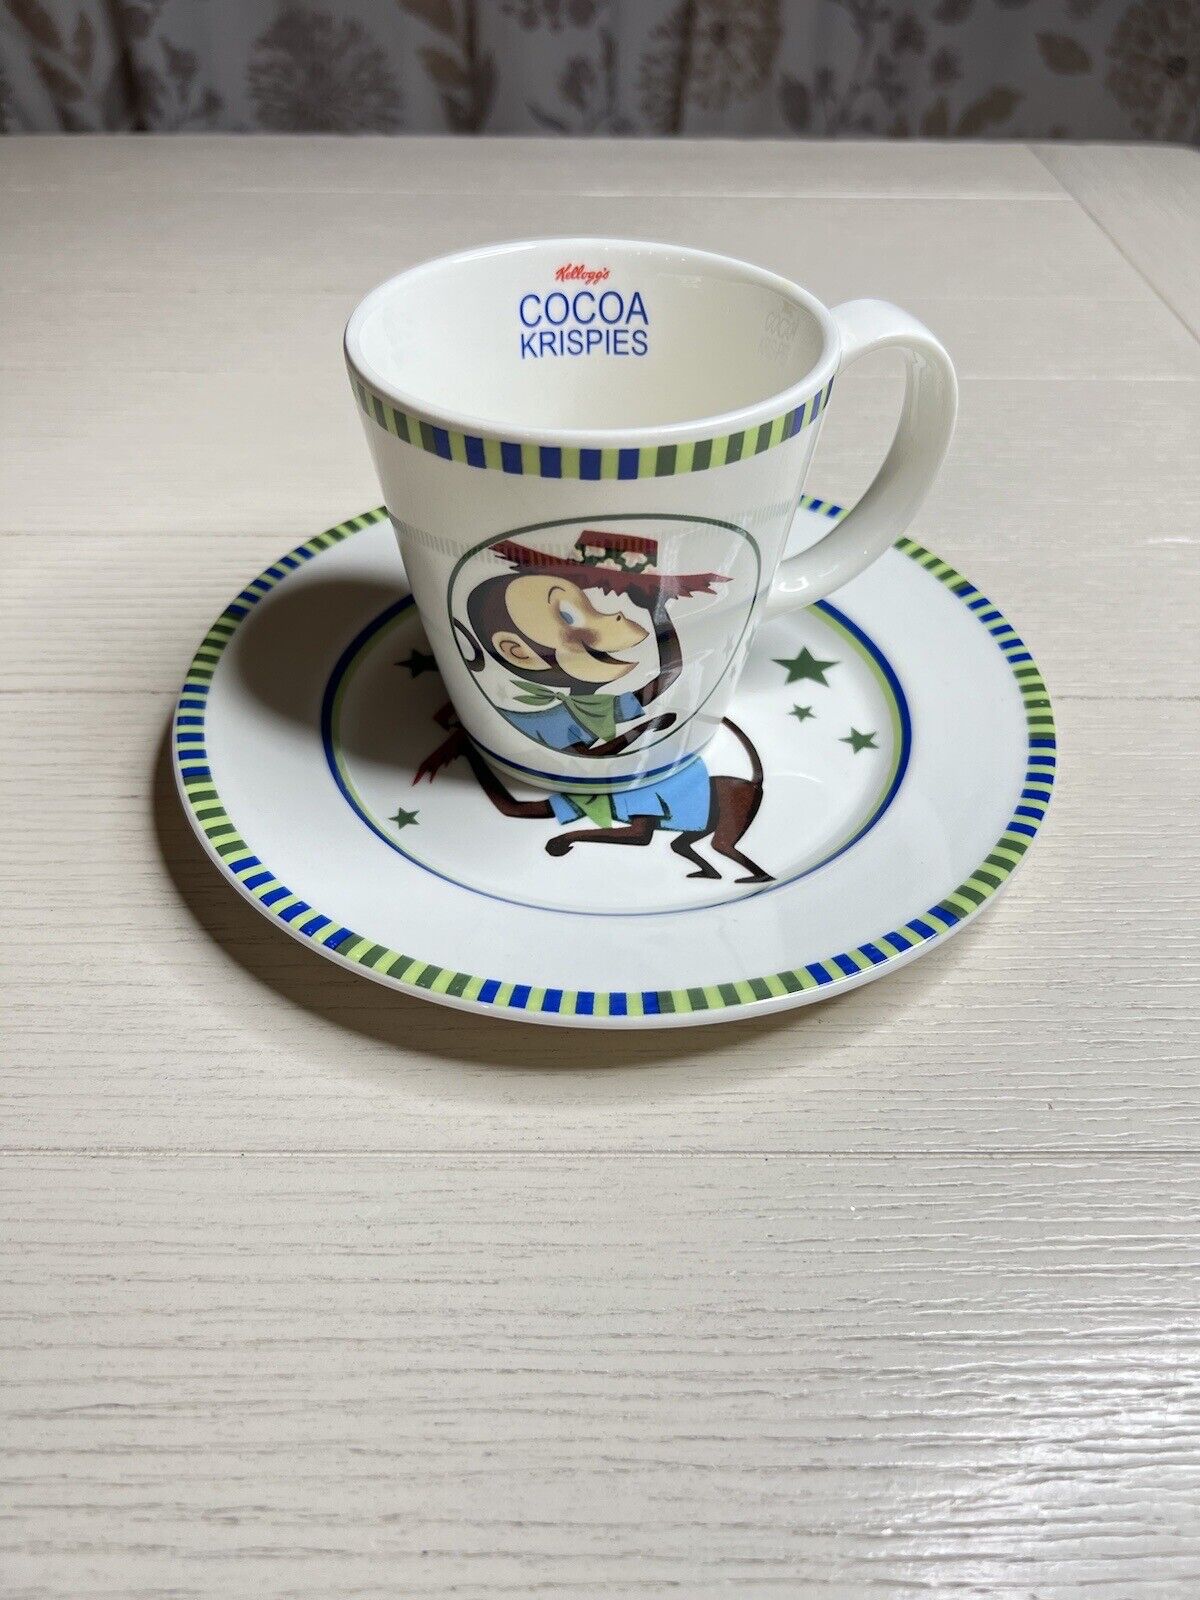 2005 Kellogg’s Cocoa Krispies Mug And Plate